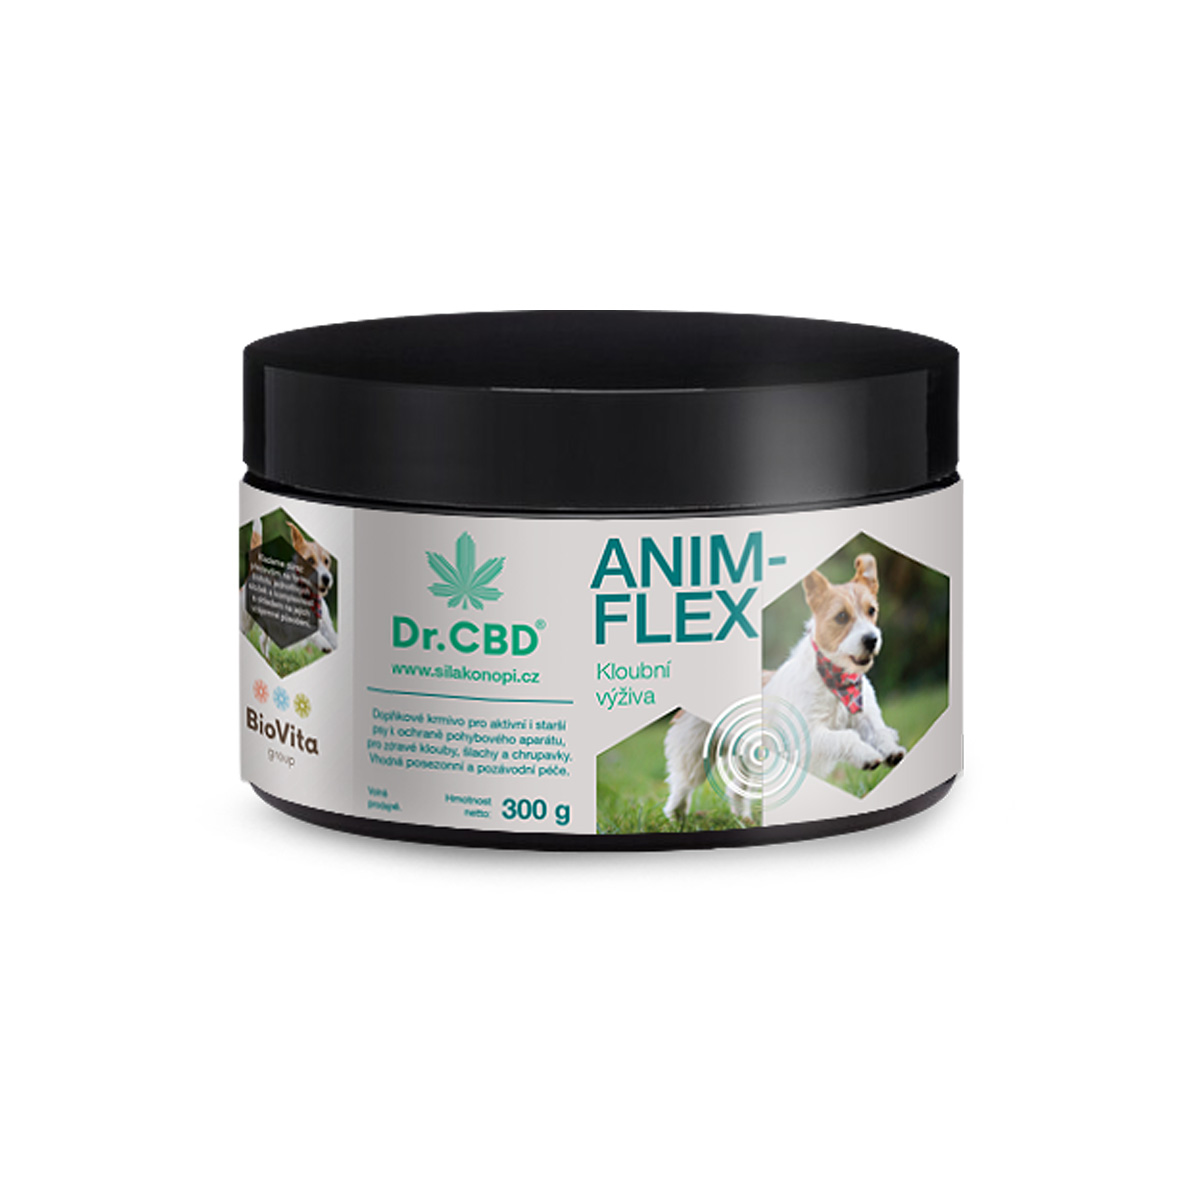 Dr. CBD Anim-flex 300 g - kloubní výživa